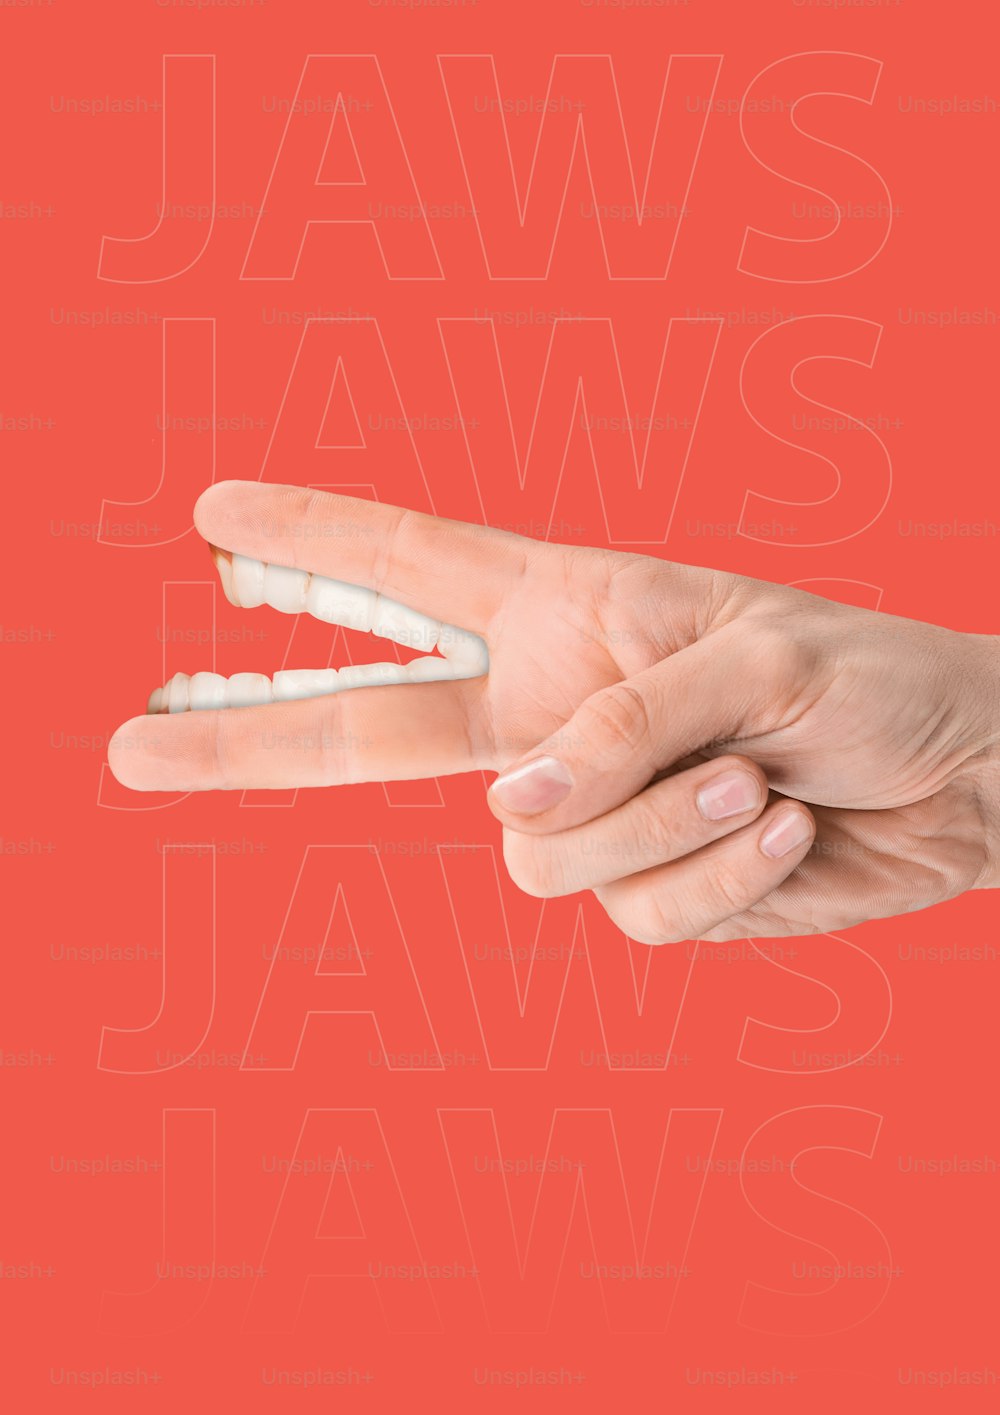 Gewaltsamer Konflikt oder Friedensabkommen. Männliche Hand mit weißen menschlichen Zähnen als Finger vor rotem Hintergrund. Modernes Design. Collage zeitgenössischer Kunst. Konzept der Ökonomie oder der menschlichen Beziehung oder der Politik.